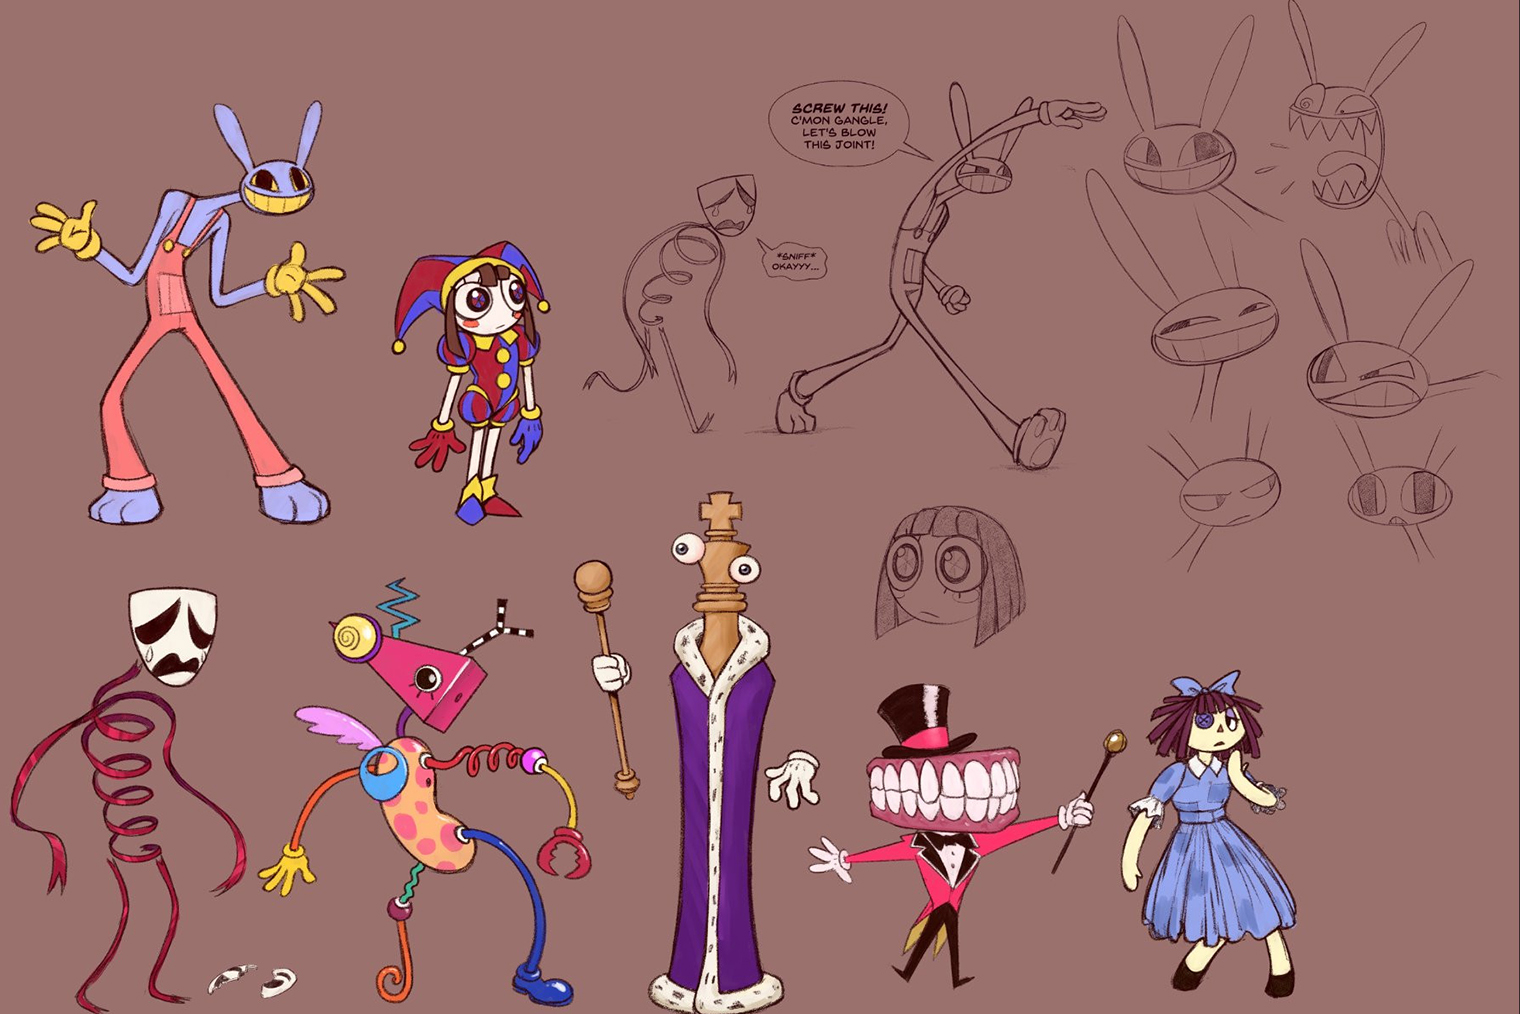 Концепт⁠-⁠арты с персонажами «Цифрового цирка». Источник: cartoonbrew.com